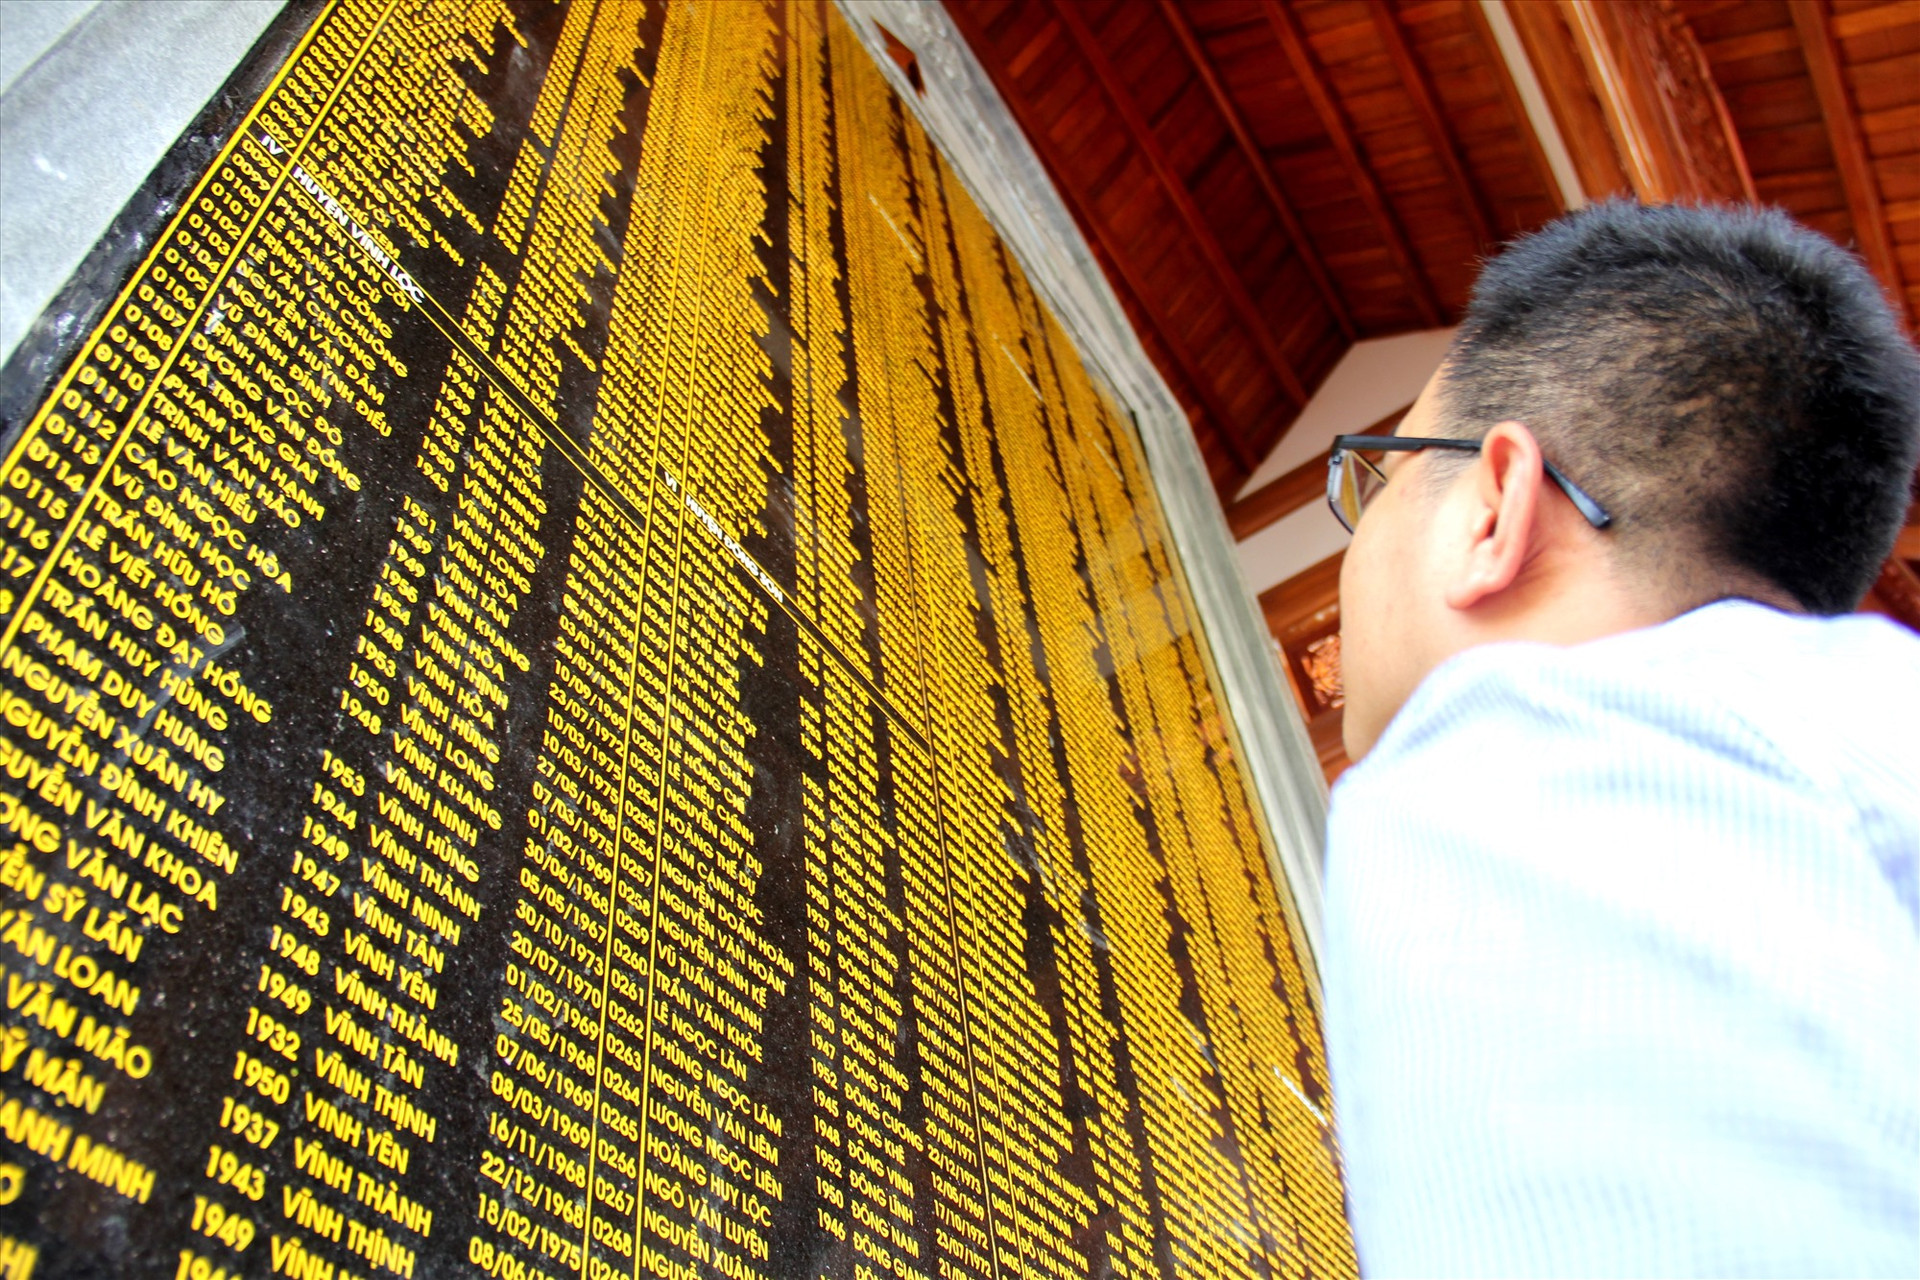 Bên trong, hai tấm bia ghi danh hơn 1.300 liệt sĩ có quê ở Thanh Hóa hy sinh trong kháng chiến tại Quảng Nam được dựng, với đầy đủ thông tin cơ bản về liệt sĩ. Ảnh: A.N